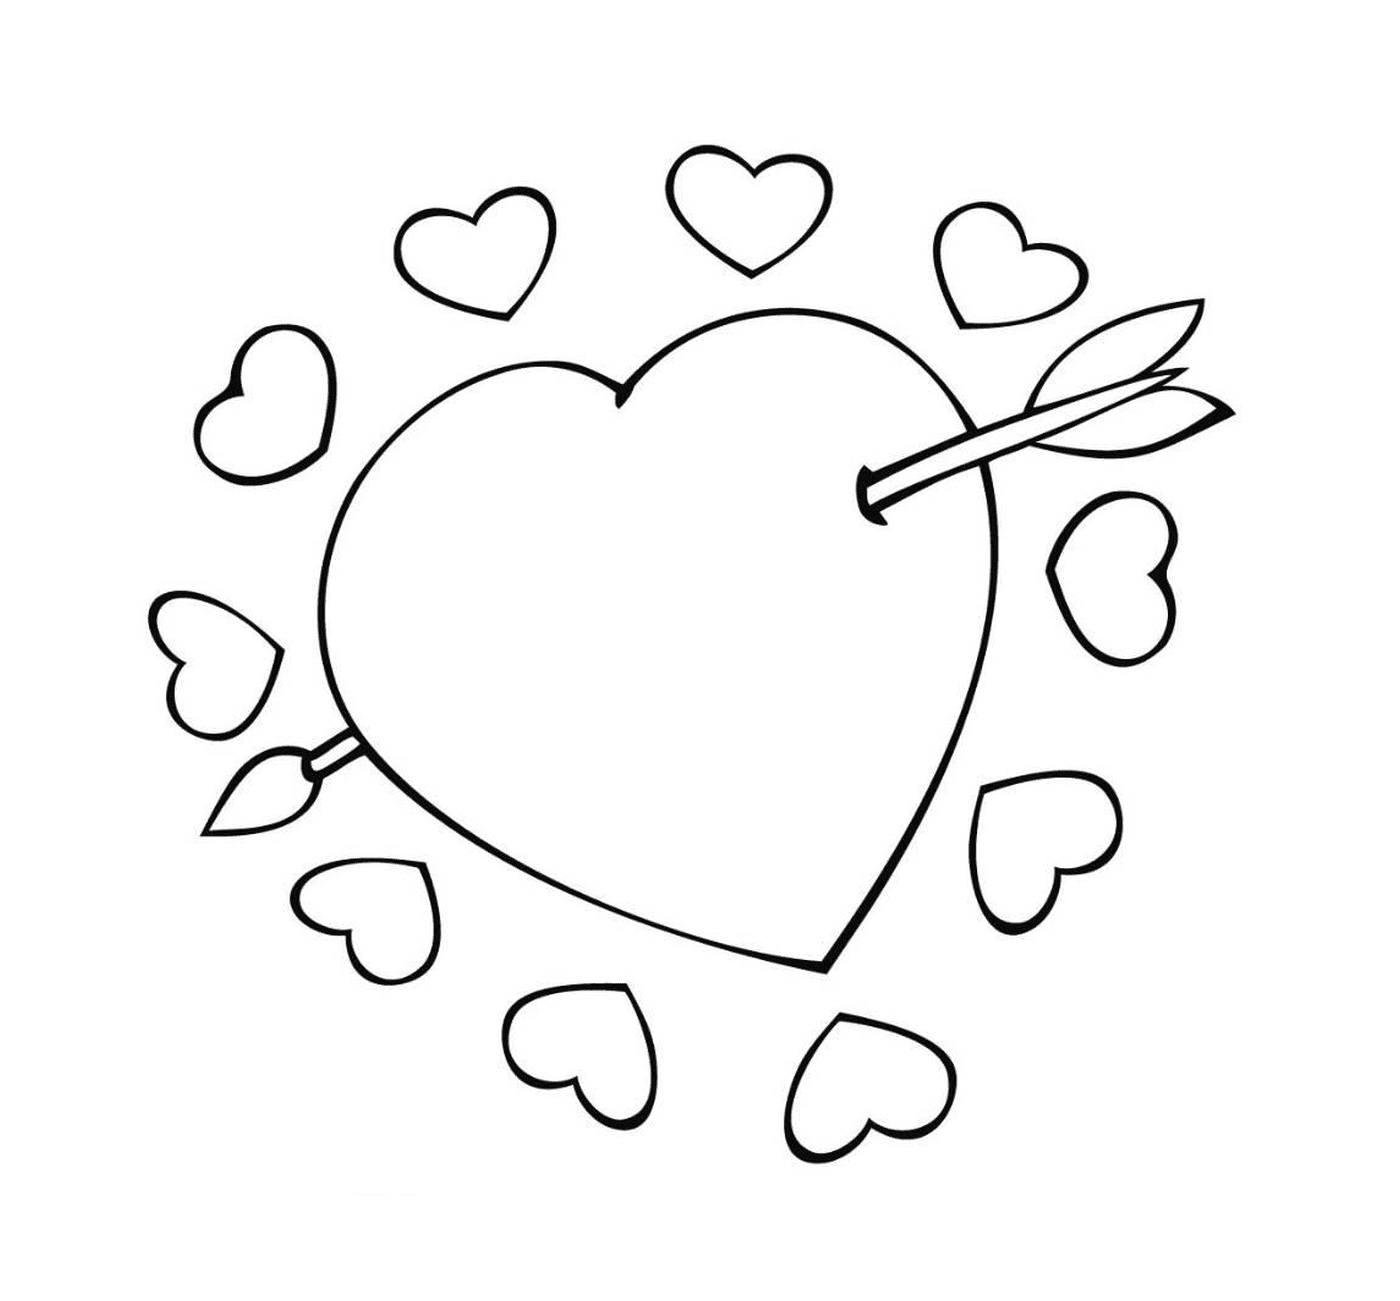  Coração com uma seta, símbolo de amor apaixonado 